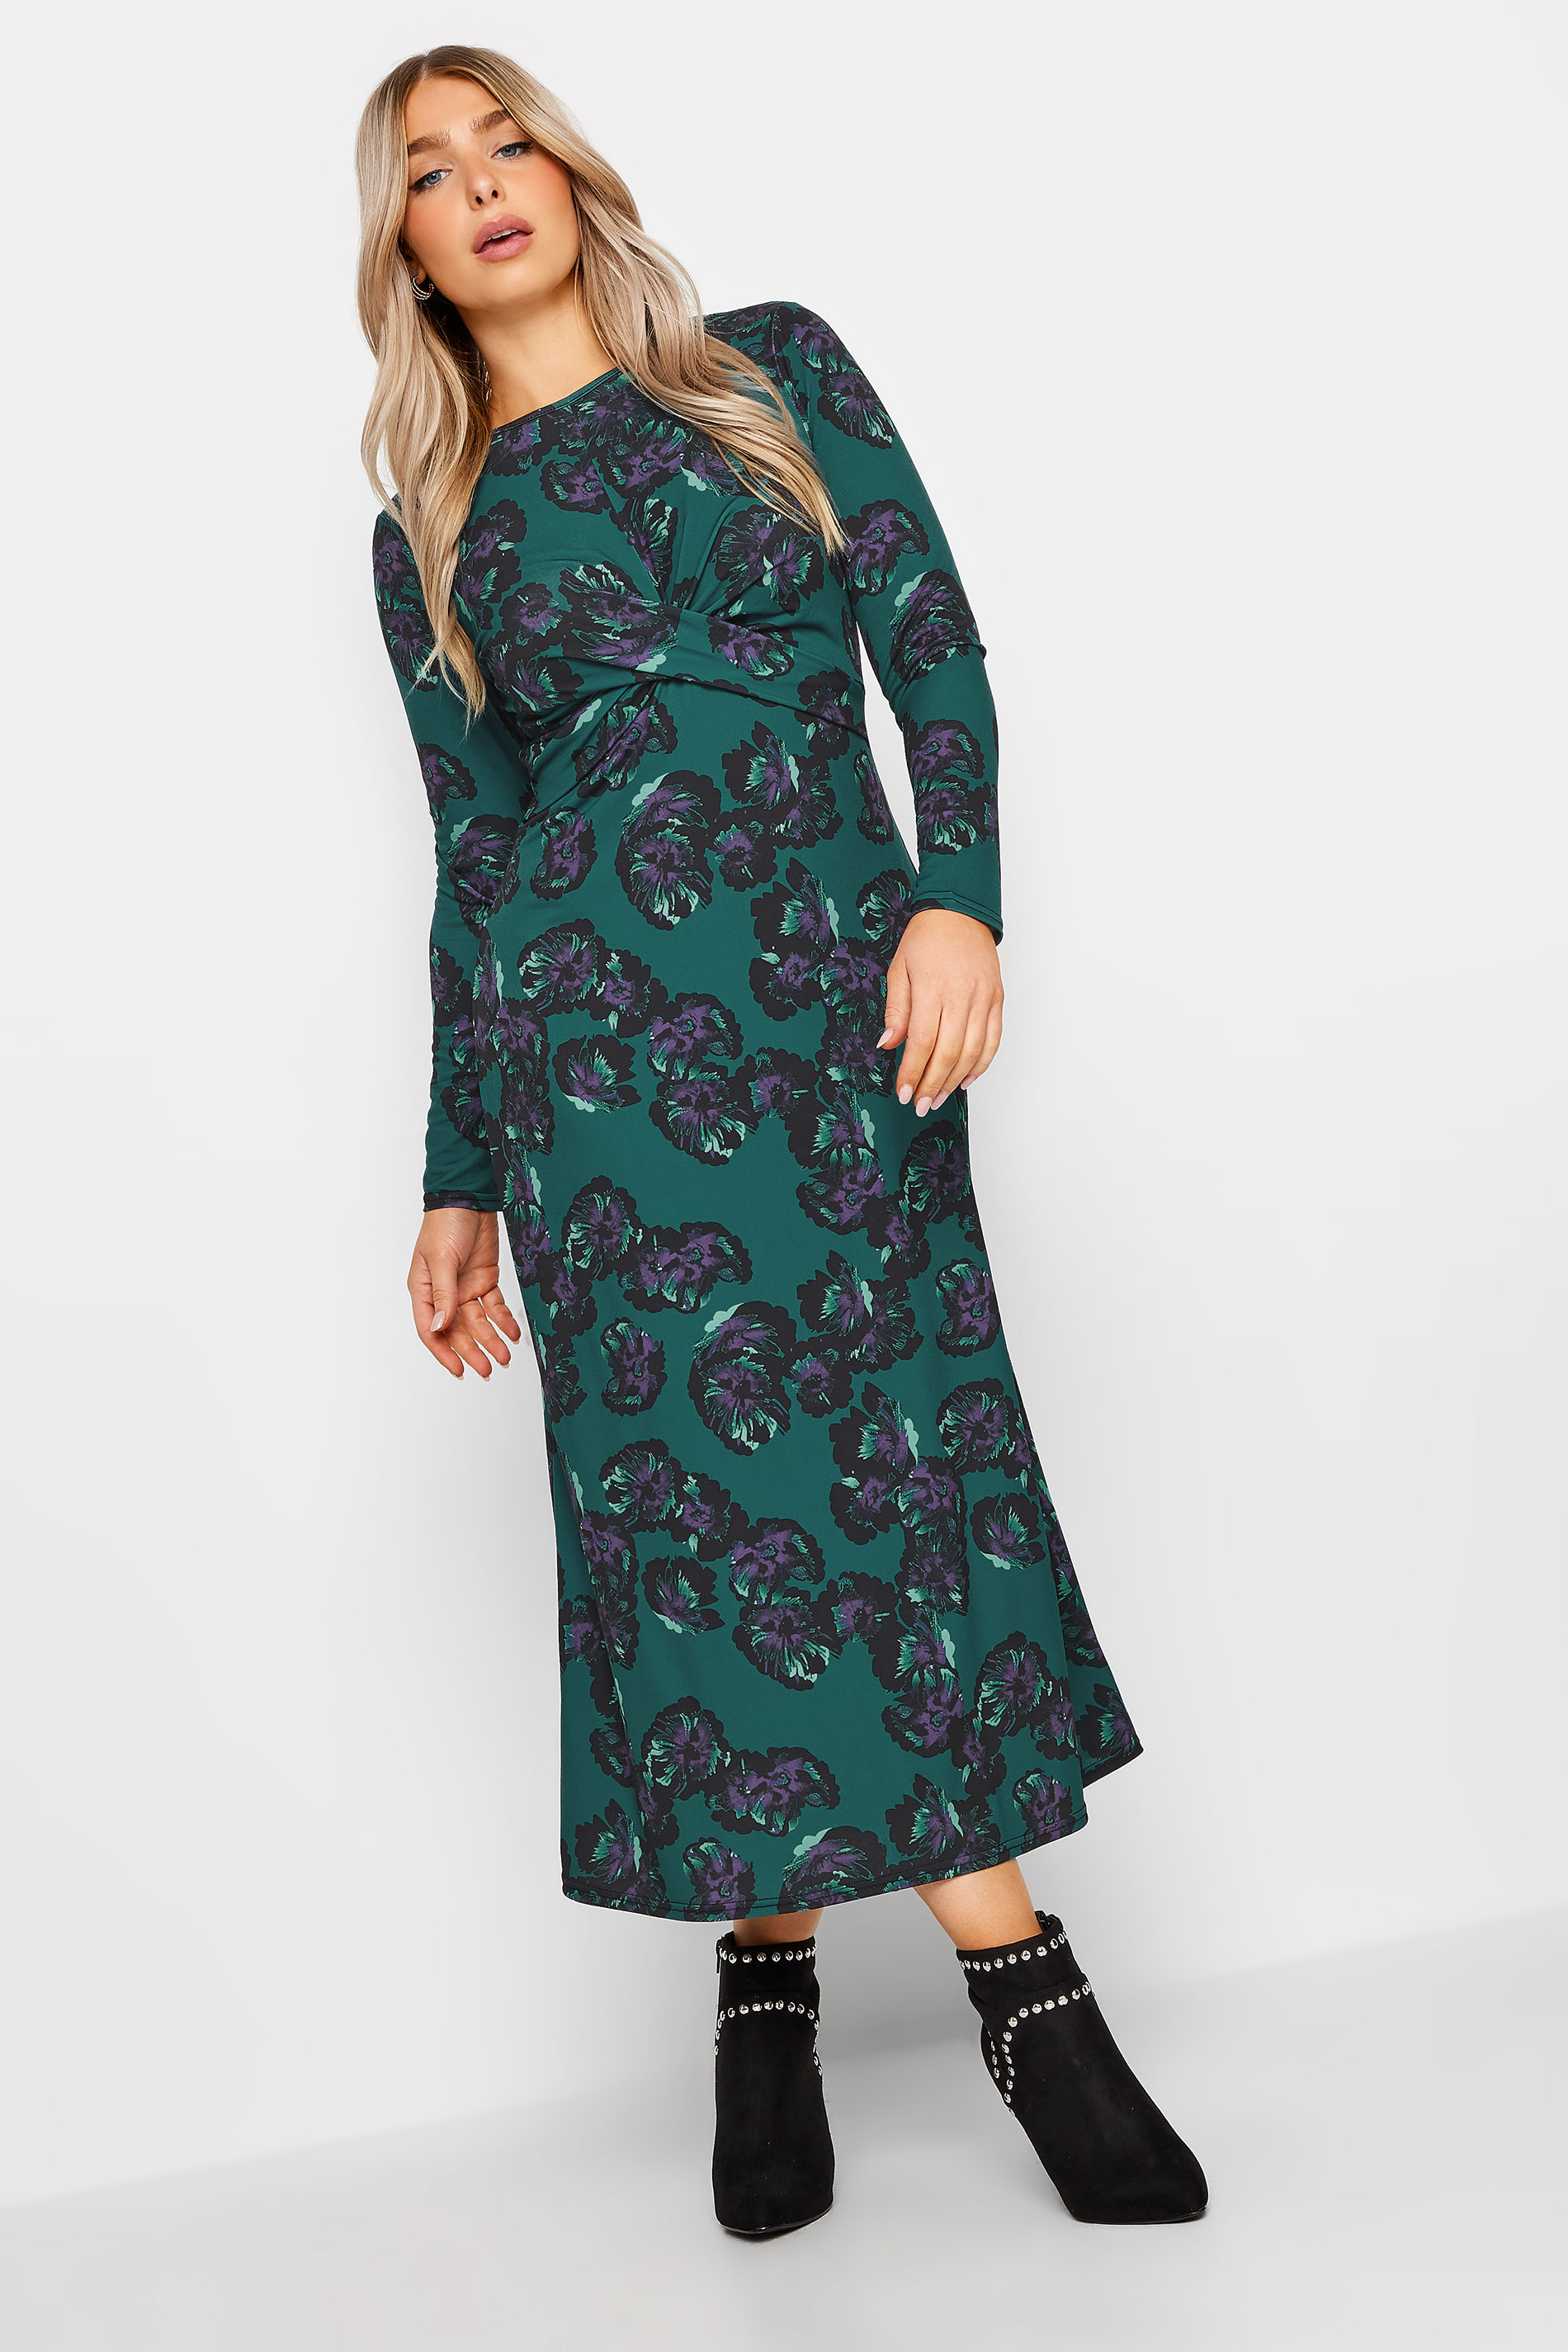 M&Co Dark Green Floral Twist Midaxi Dress | M&Co  2